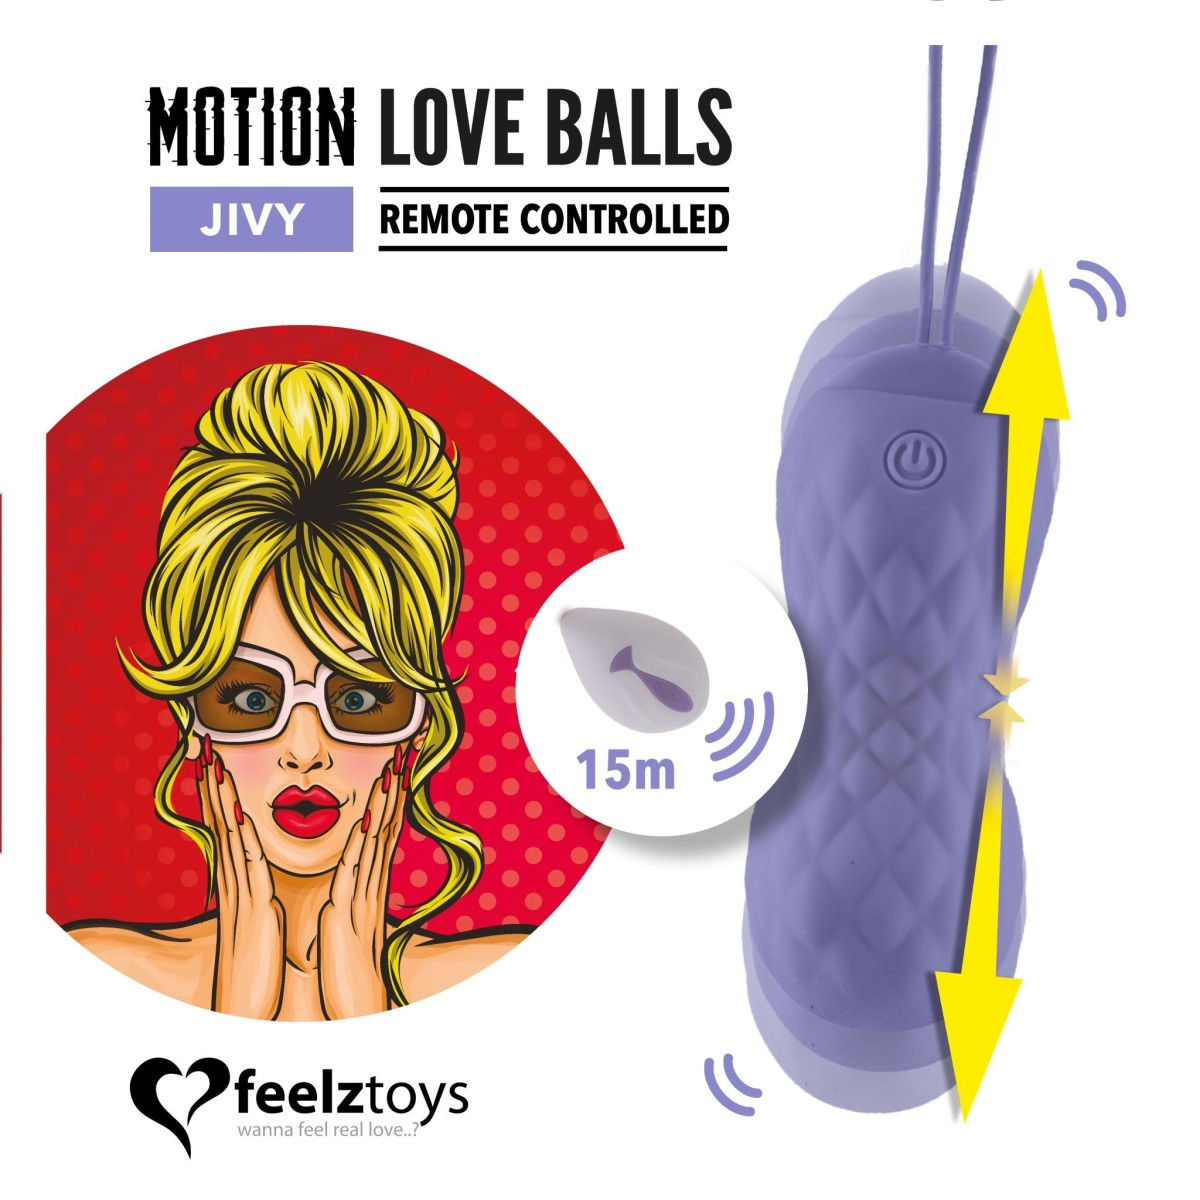 FeelzToys Jivy Remote Controlled Motion Love Balls, silikónové vaginálne guličky s diaľkovým ovládaním